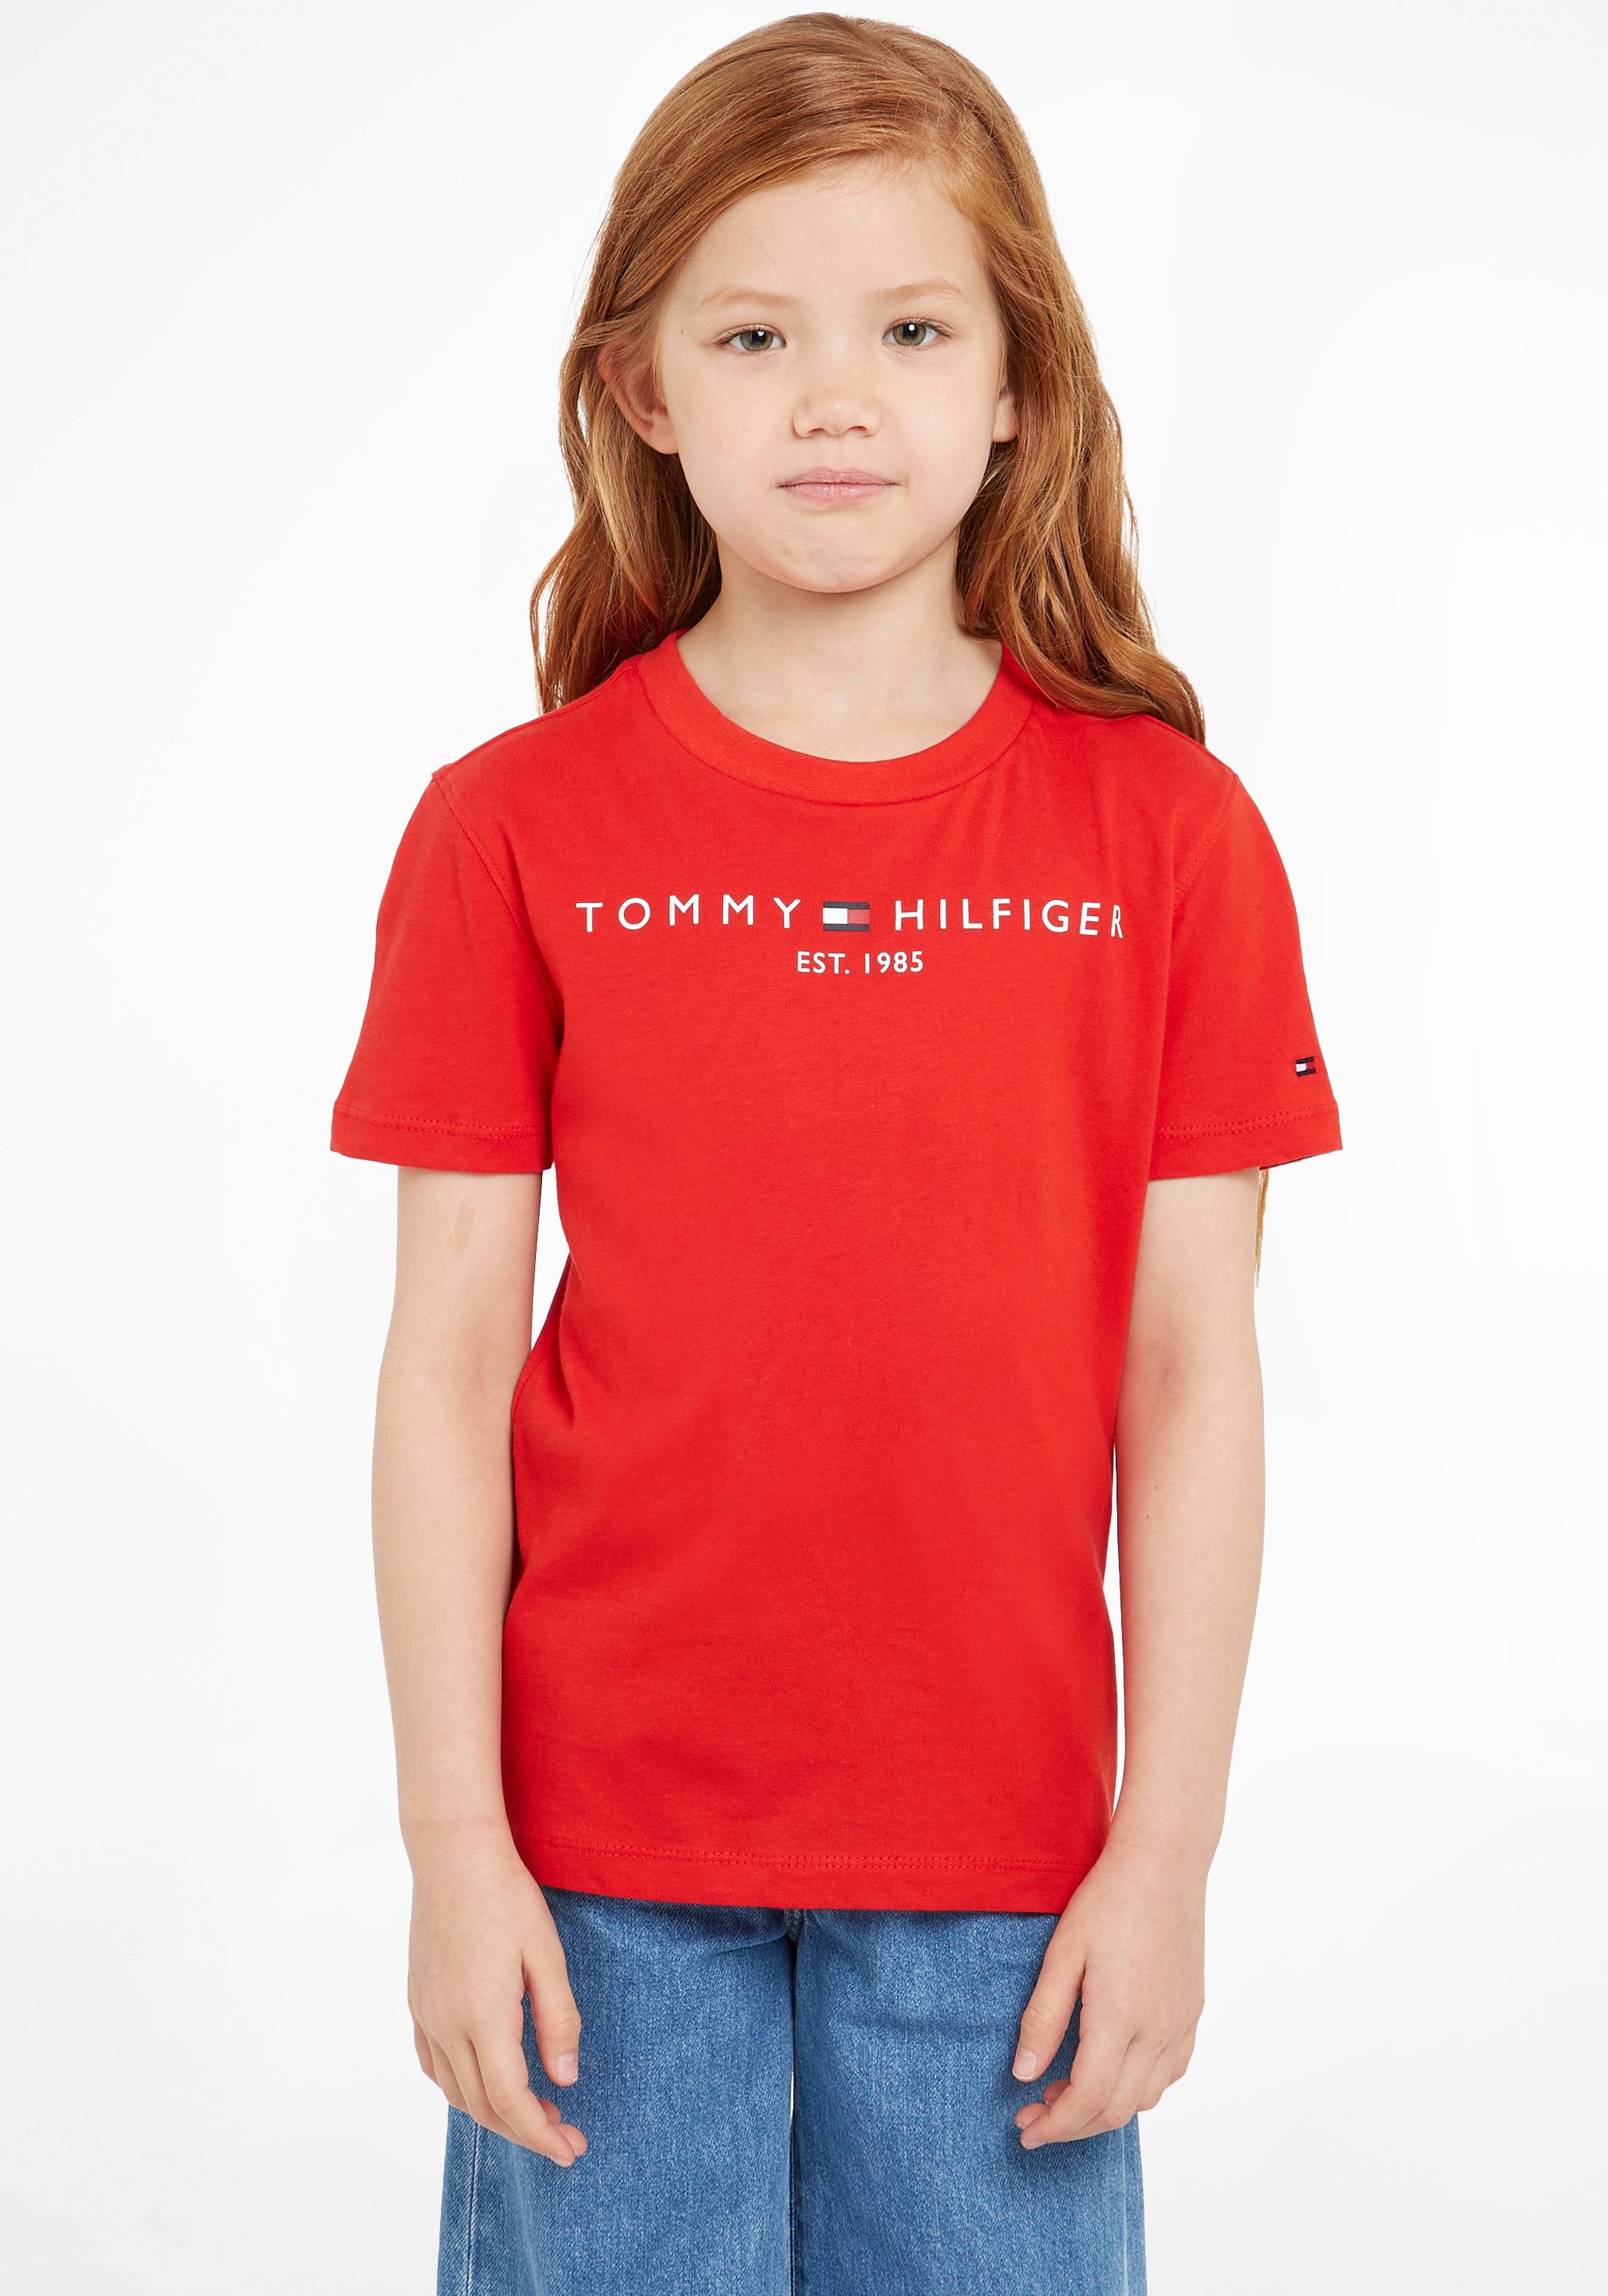 TEE«, Jungen Hilfiger Kinder Mädchen bei Tommy und »ESSENTIAL T-Shirt Kids MiniMe,für Junior